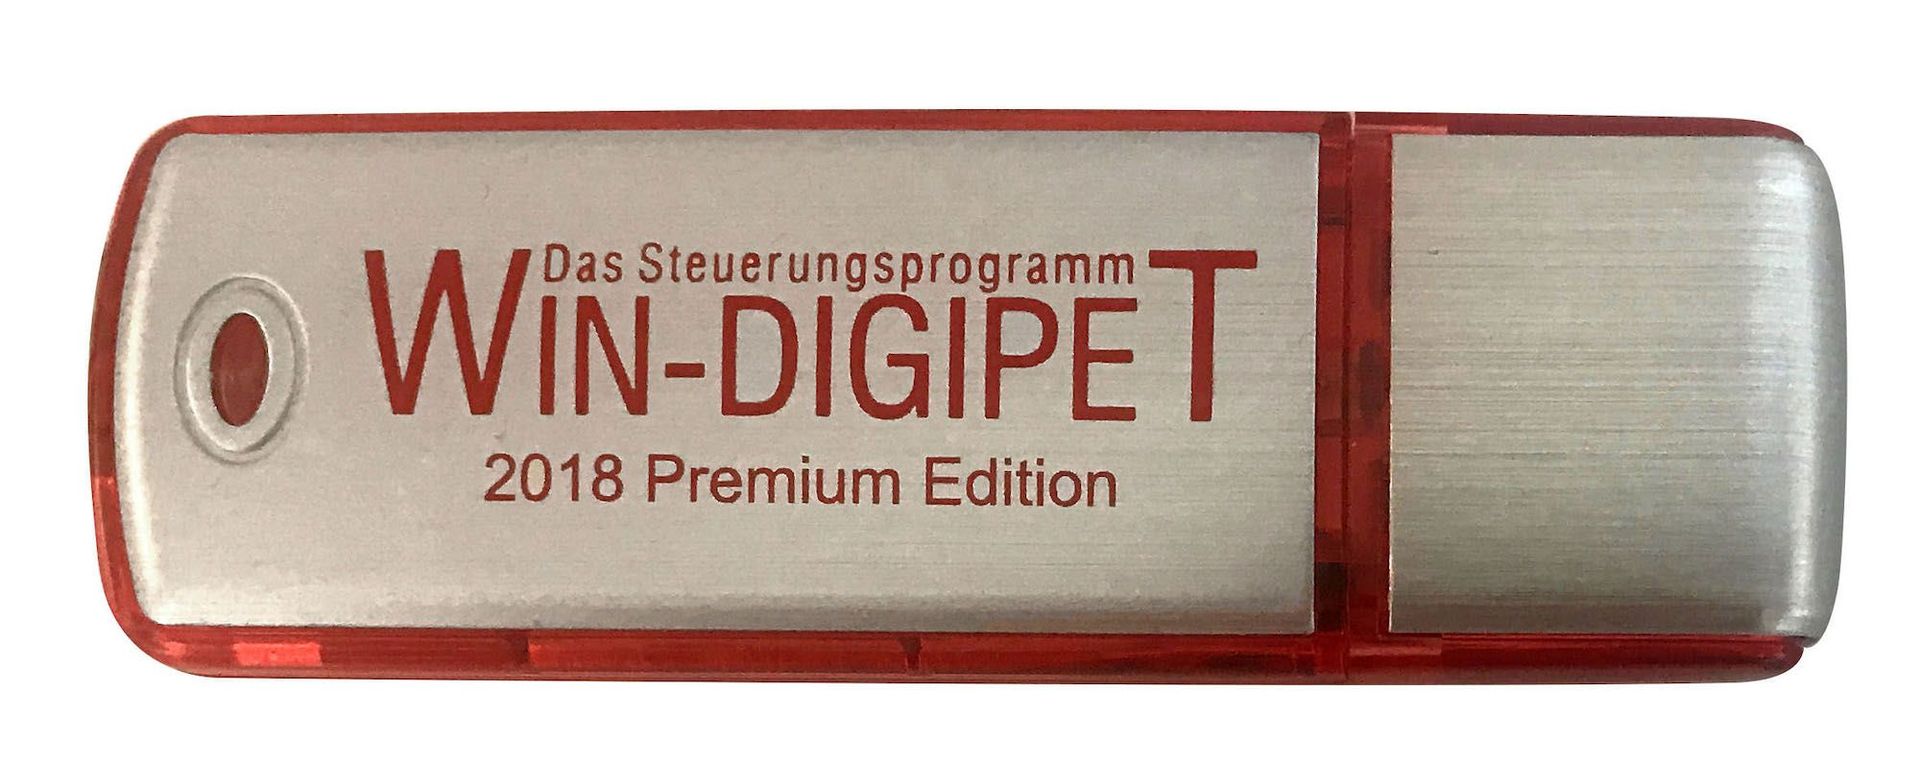 Viessmann 1011 - WIN Digipet 2018 Premium Edition